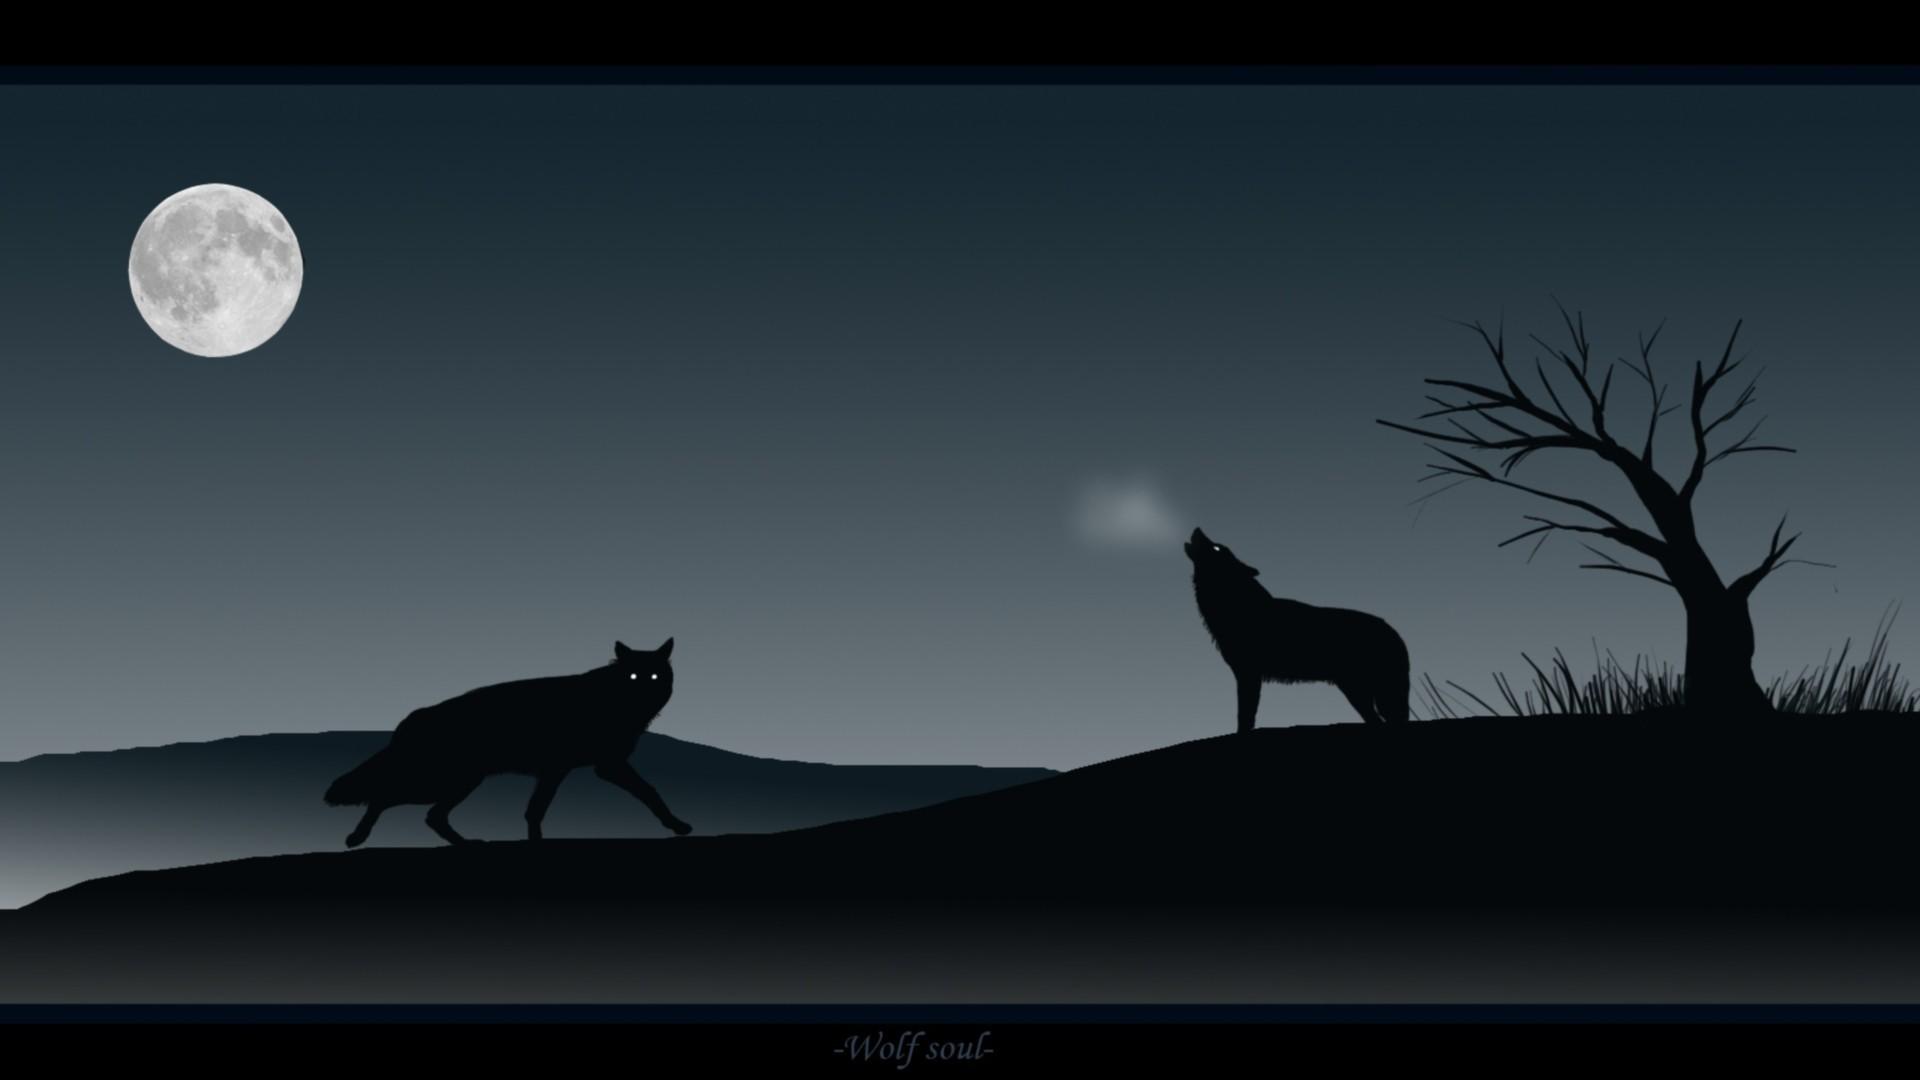 Wolf soul wallpaper. PC